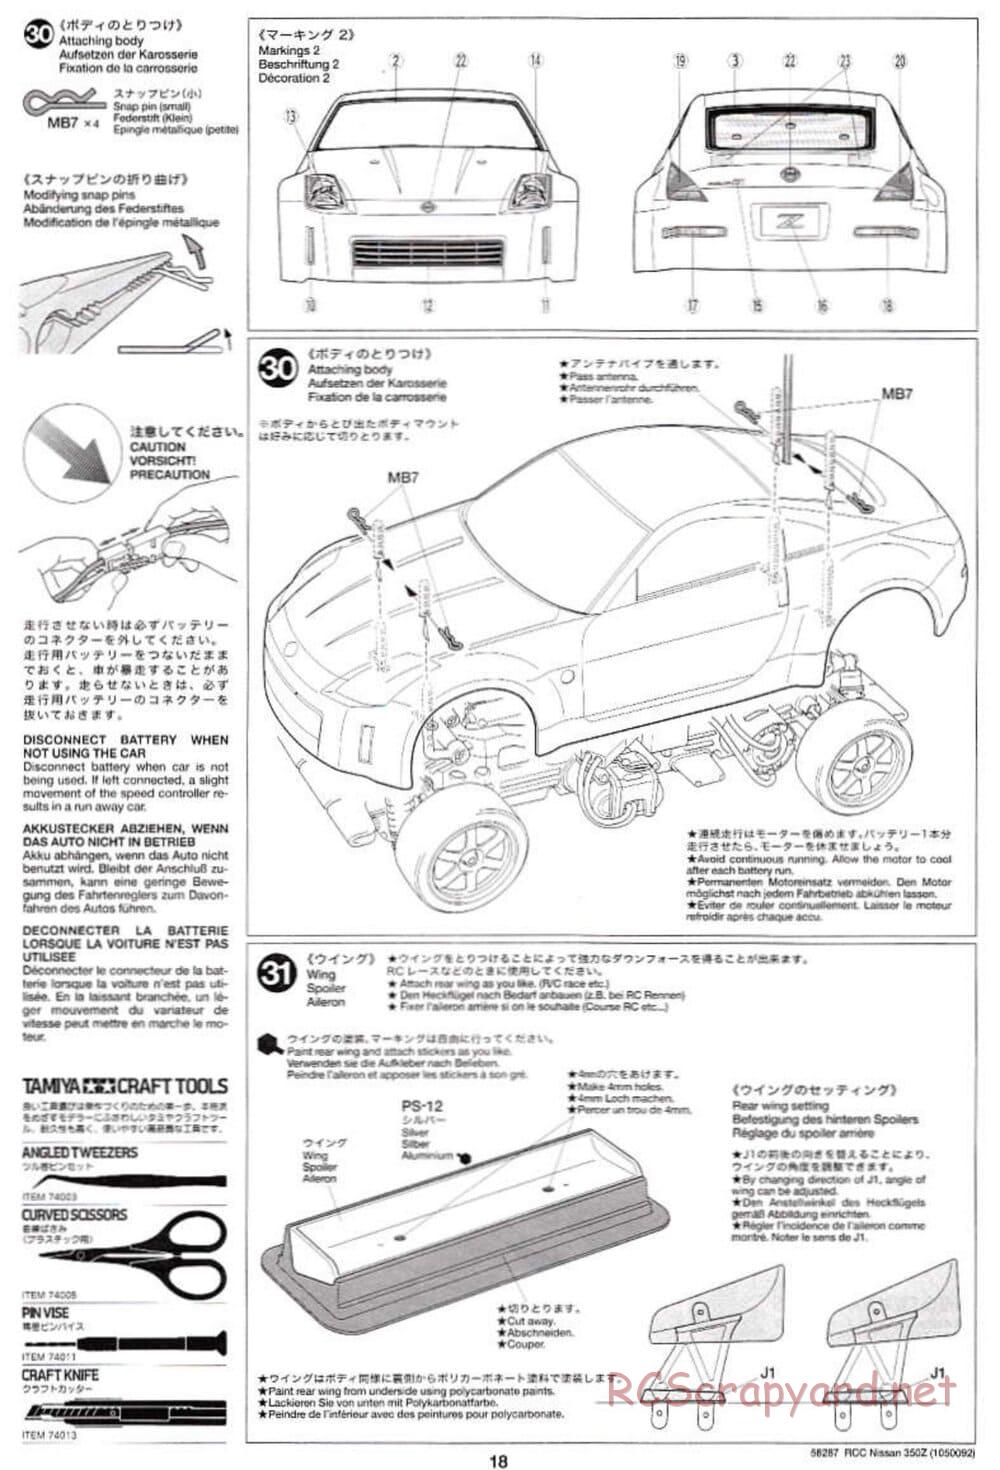 Tamiya - Nissan 350Z - TL-01 Chassis - Manual - Page 18